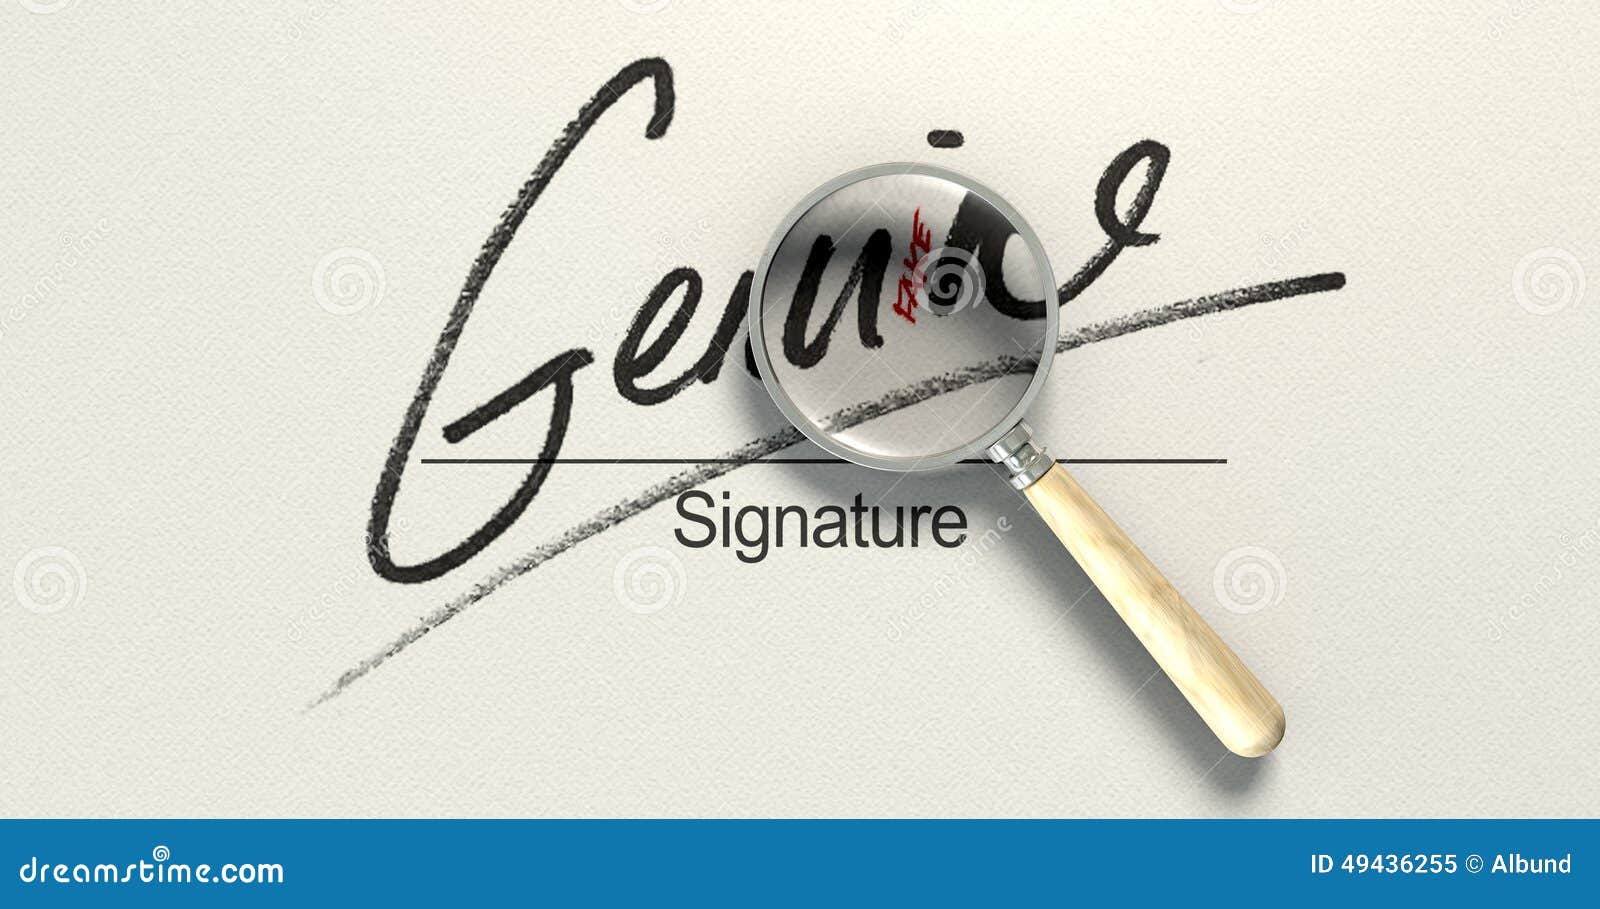 genuine fake signature